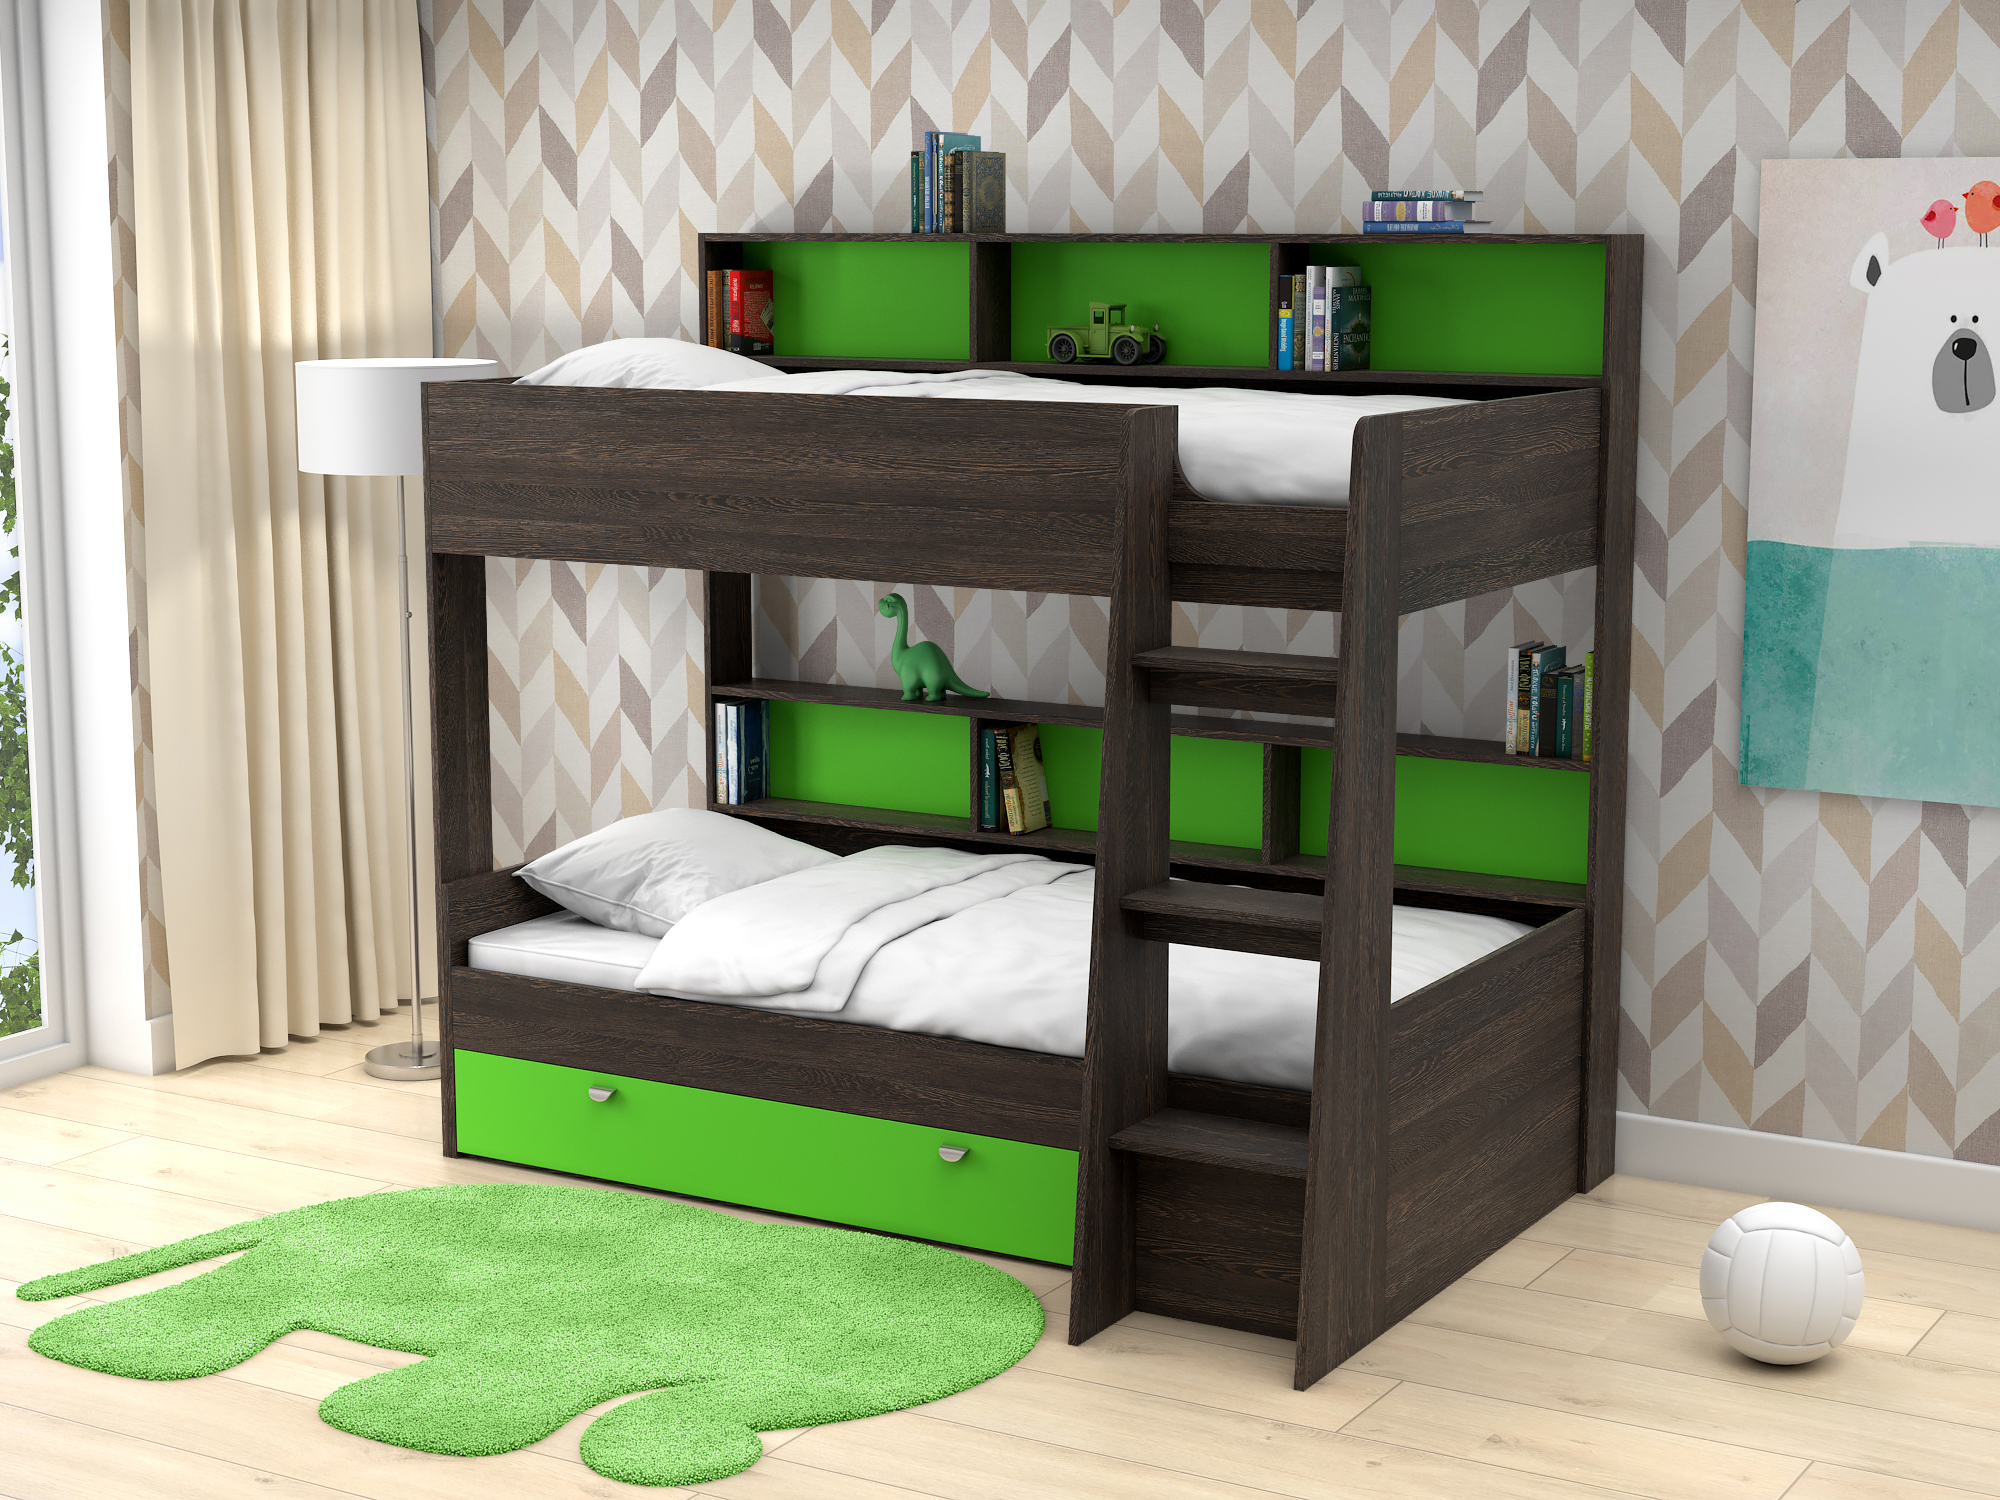 Двухъярусная кровать Golden Kids-1 (90х200) Зеленый, Коричневый темный, ЛДСП